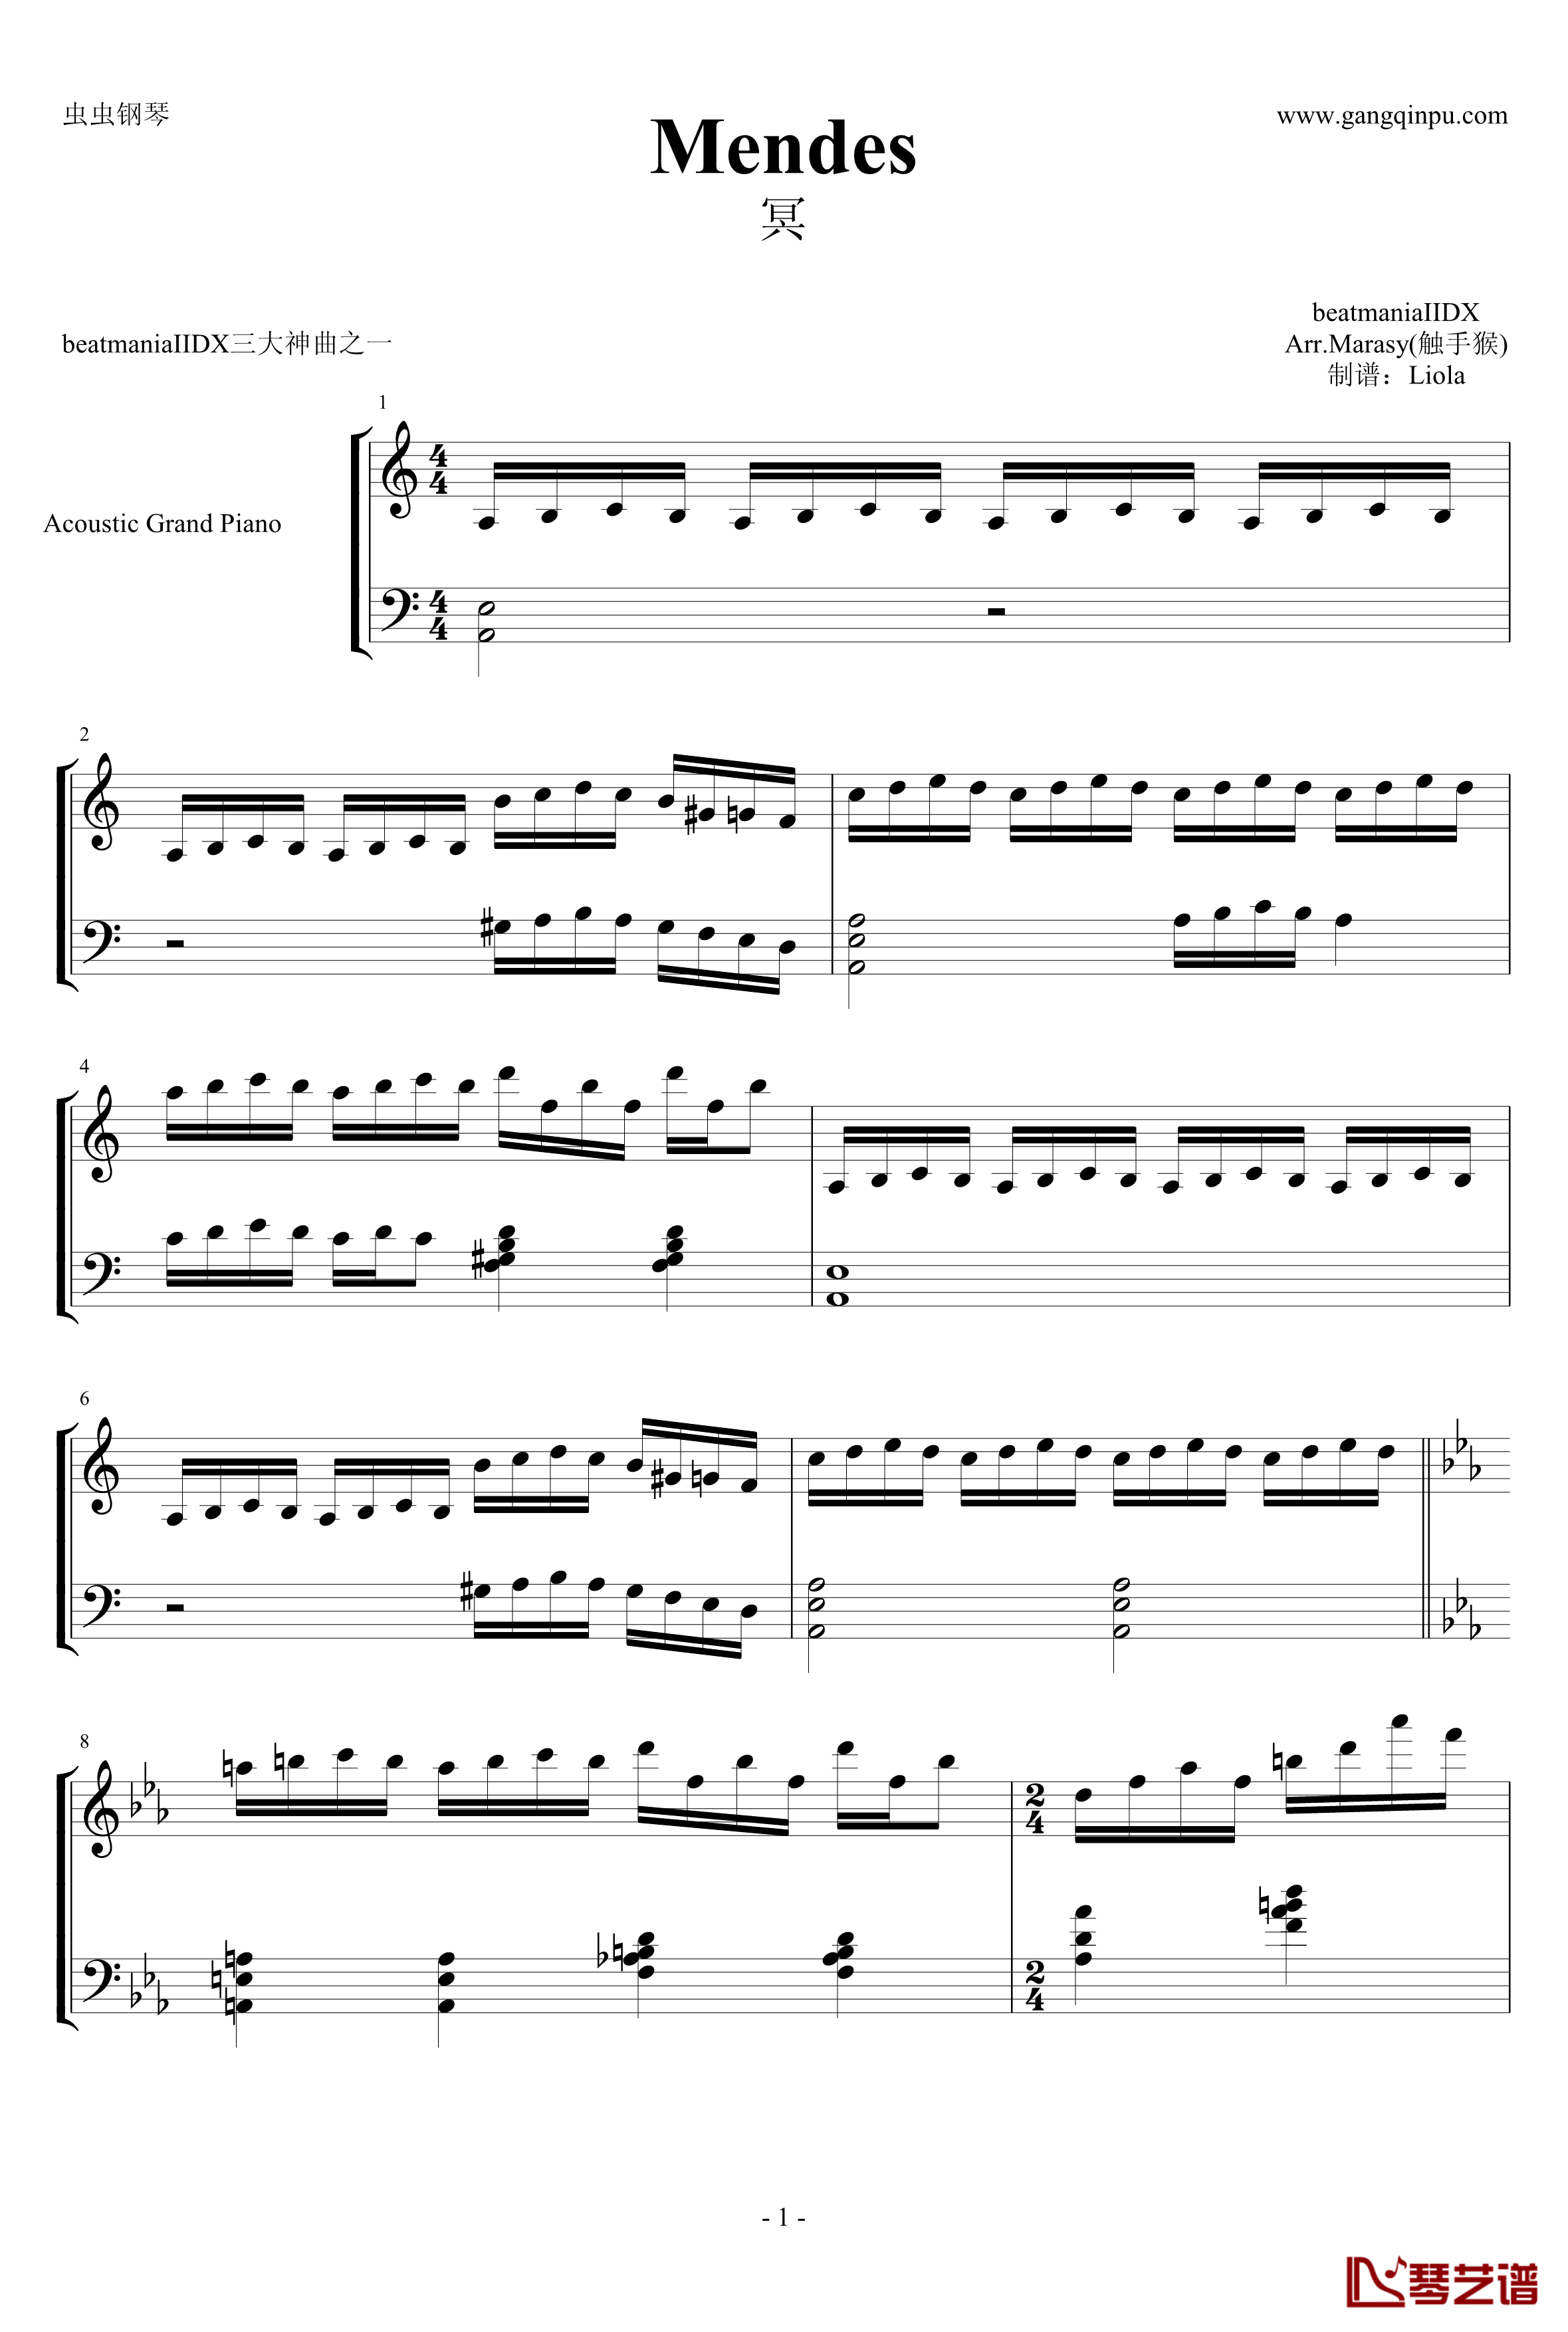 MENDES钢琴谱-触手猴-beatmaniaIIDX1